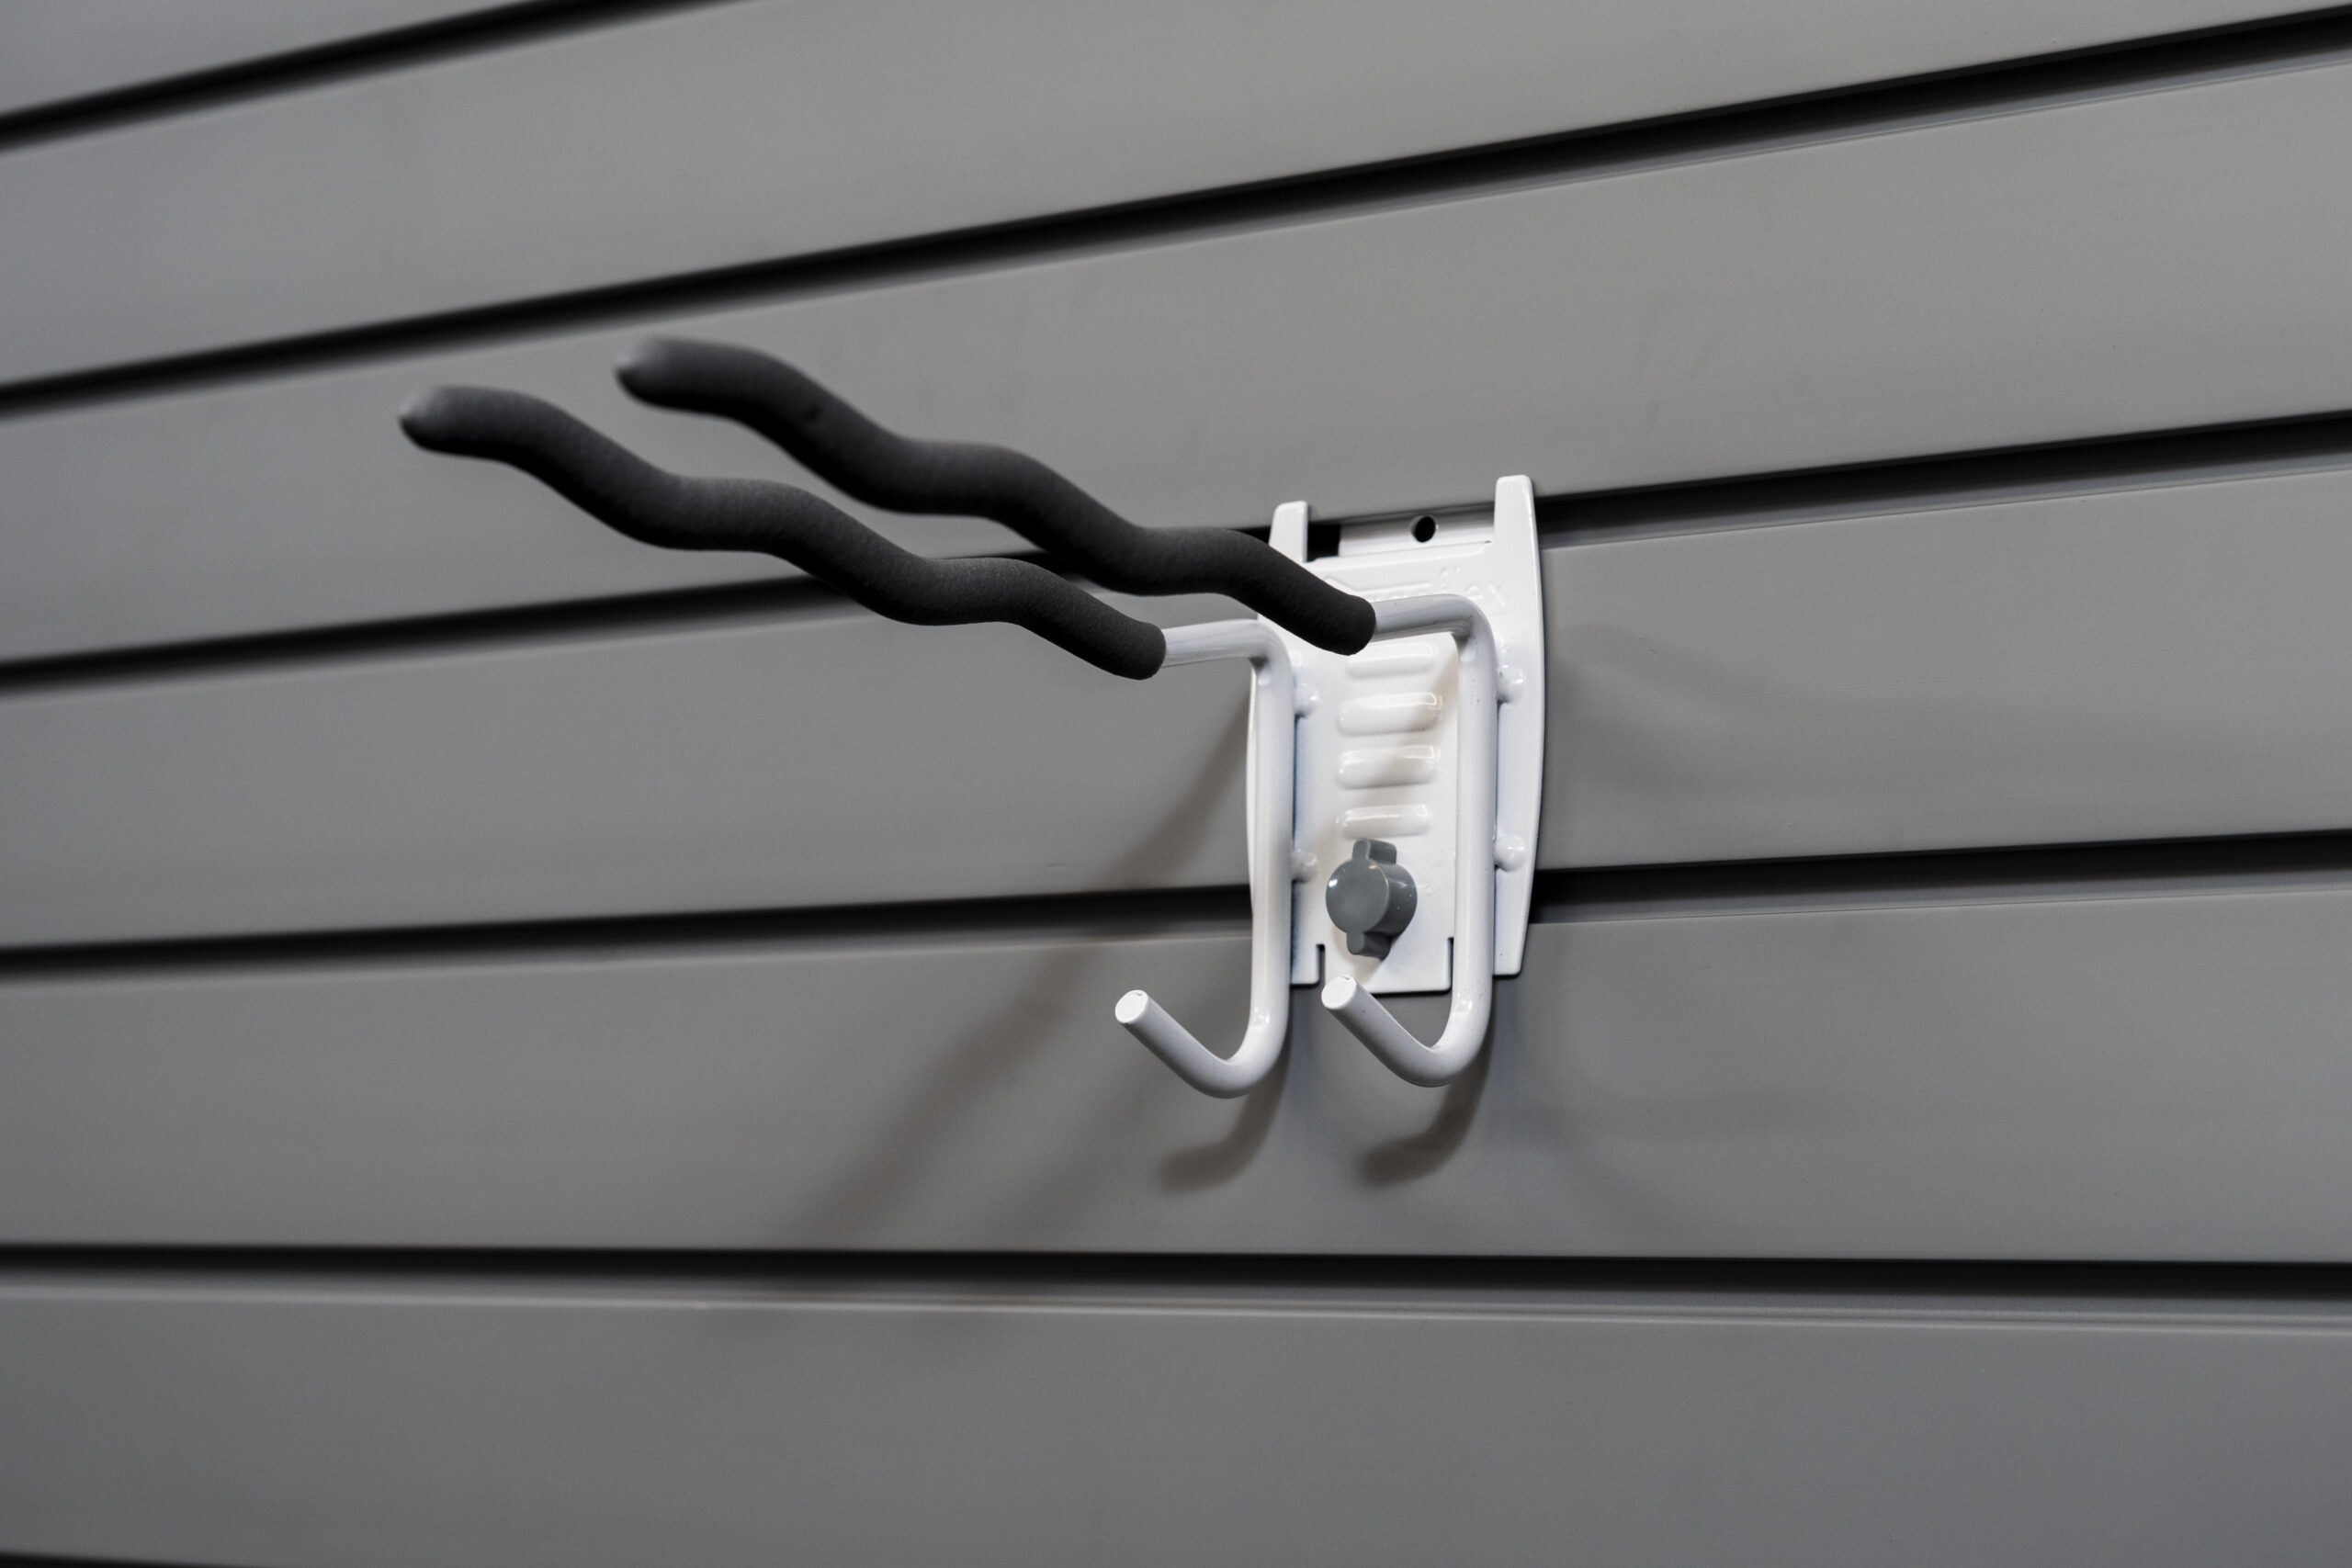 Multi-purpose tool hook on slatwall holding various items